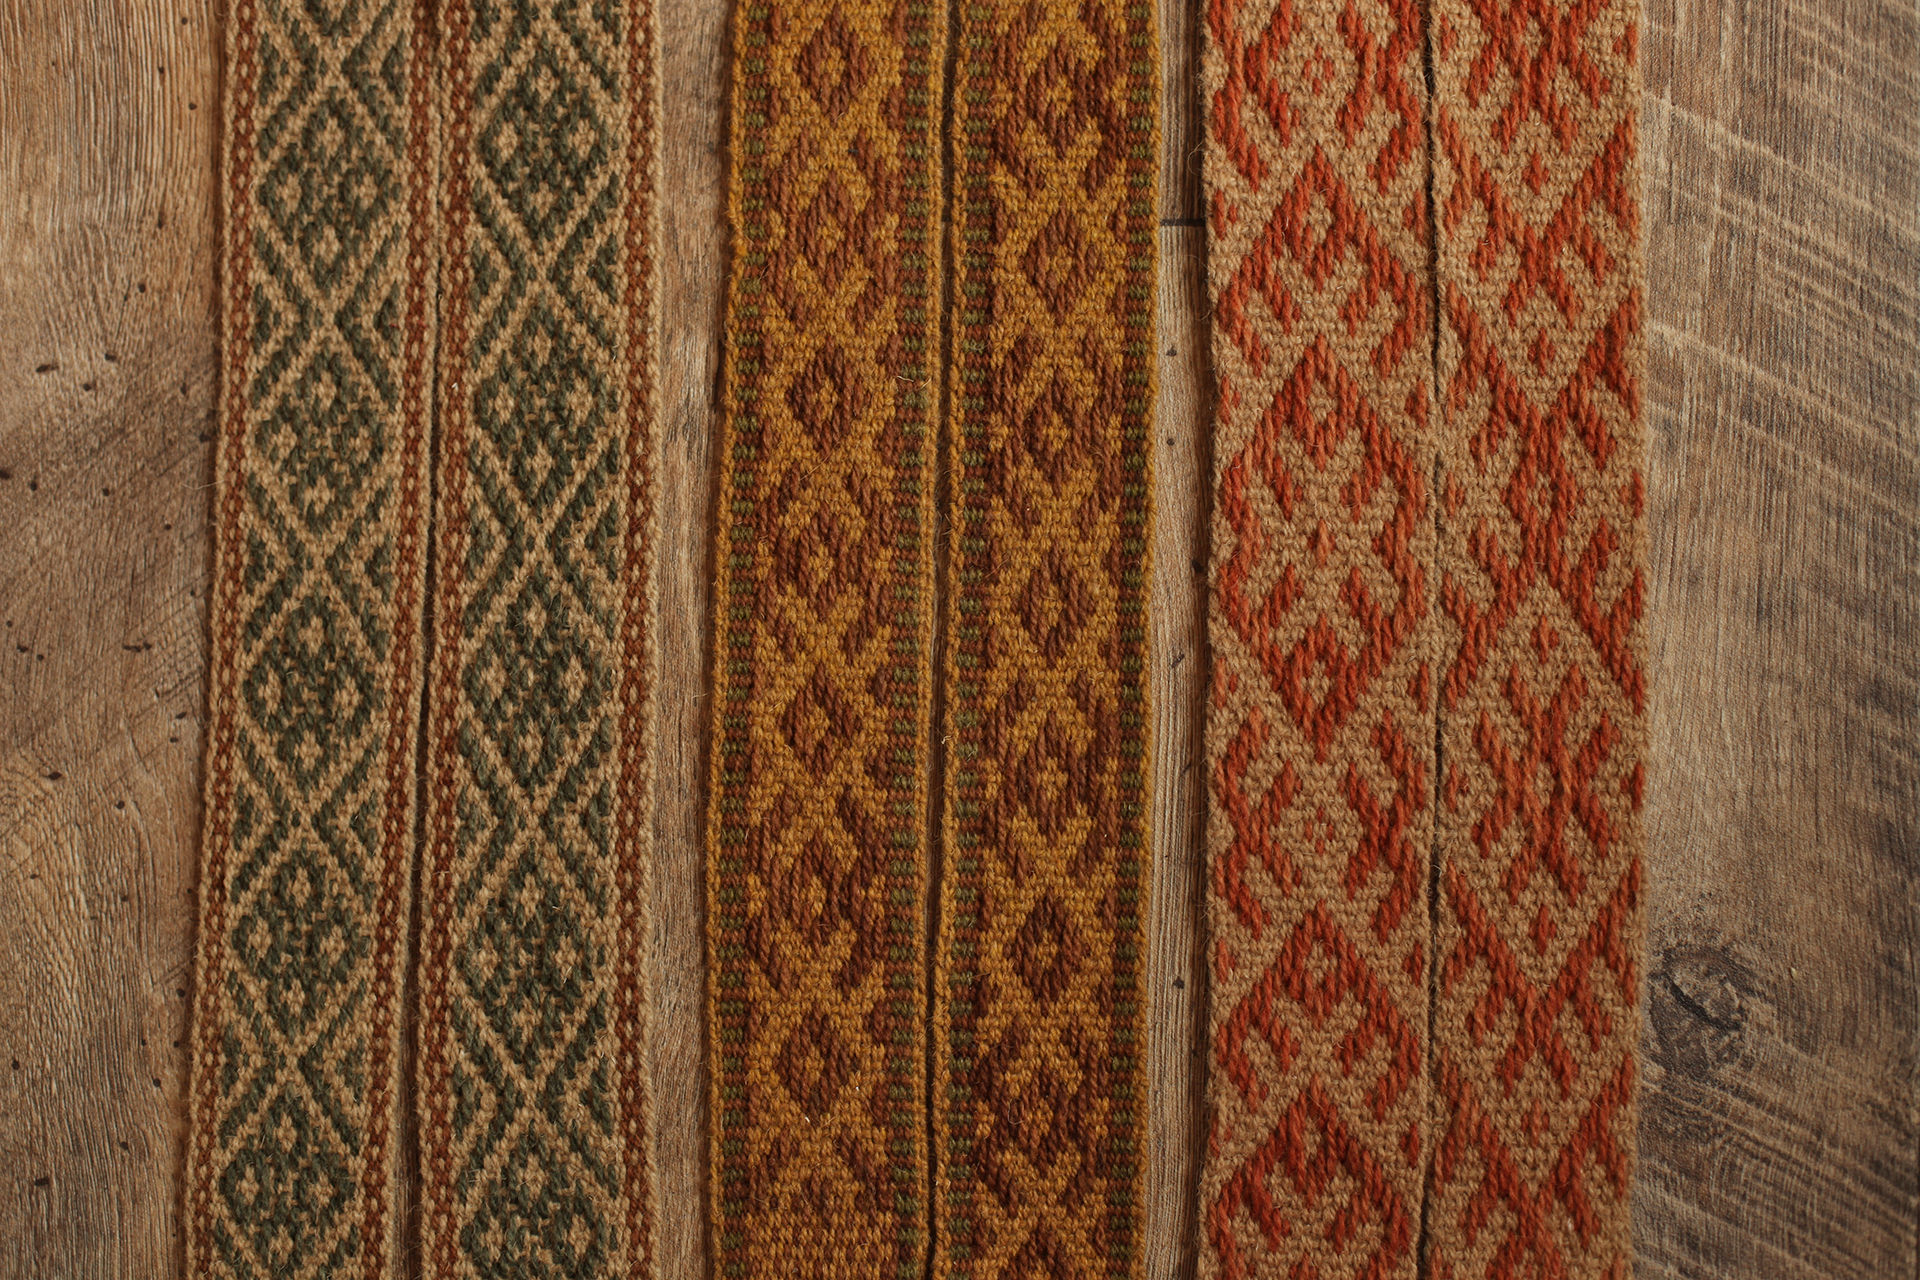 Zdjęcie przedstawia trzy tkane pasy, zwane krajkami ułożone równolegle przy sobie. Praca została wykonana z prezentowanych powyżej włóczek. Kolorystyka wszystkich trzech krajek jest ciepła i stonowana. Praca inspirowana jest kulturą słowiańską